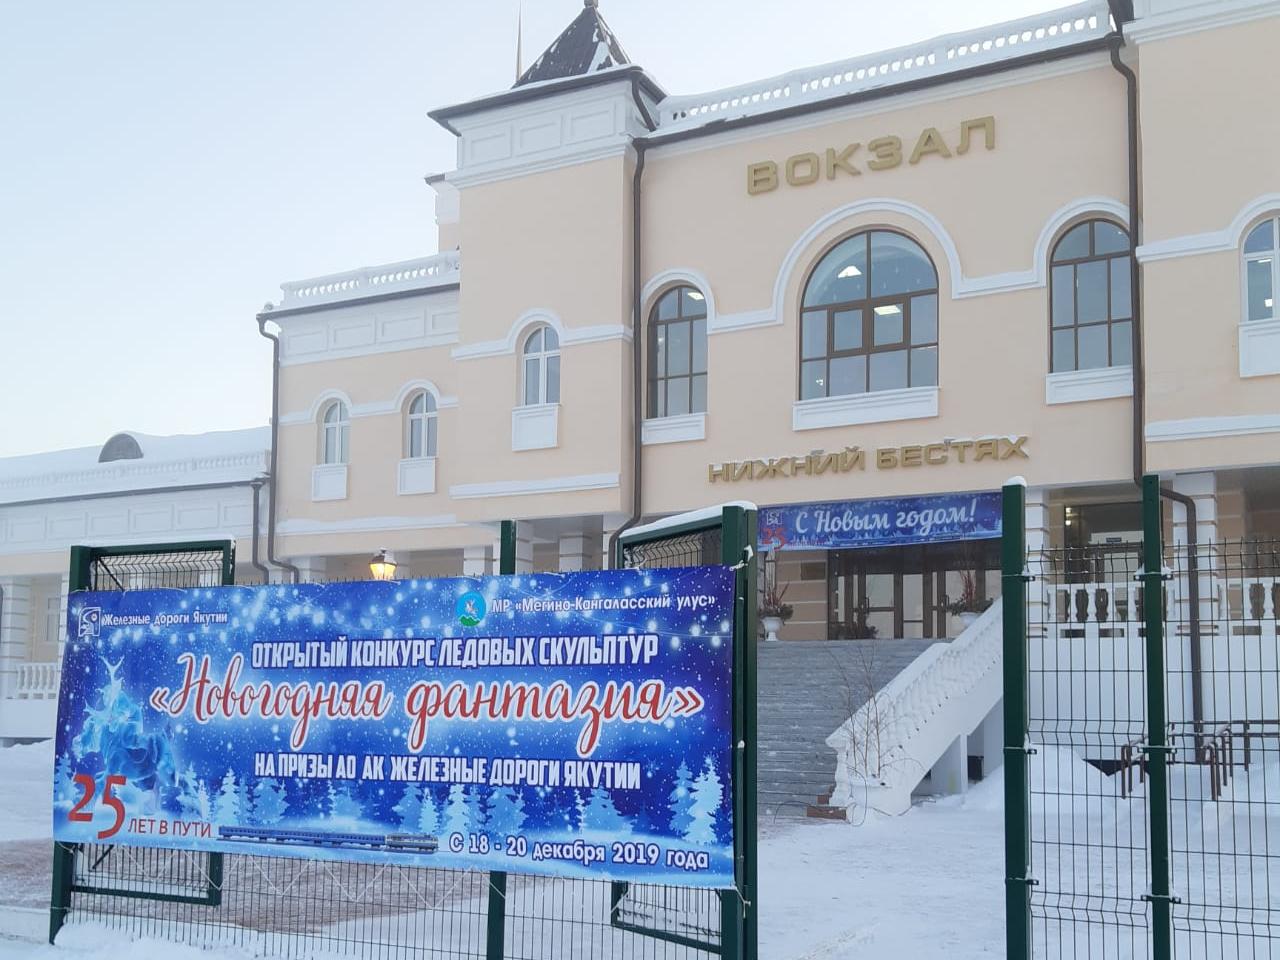 Стартовал конкурс ледовых скульптур на призы Акционерной компании "Железные дороги Якутии"